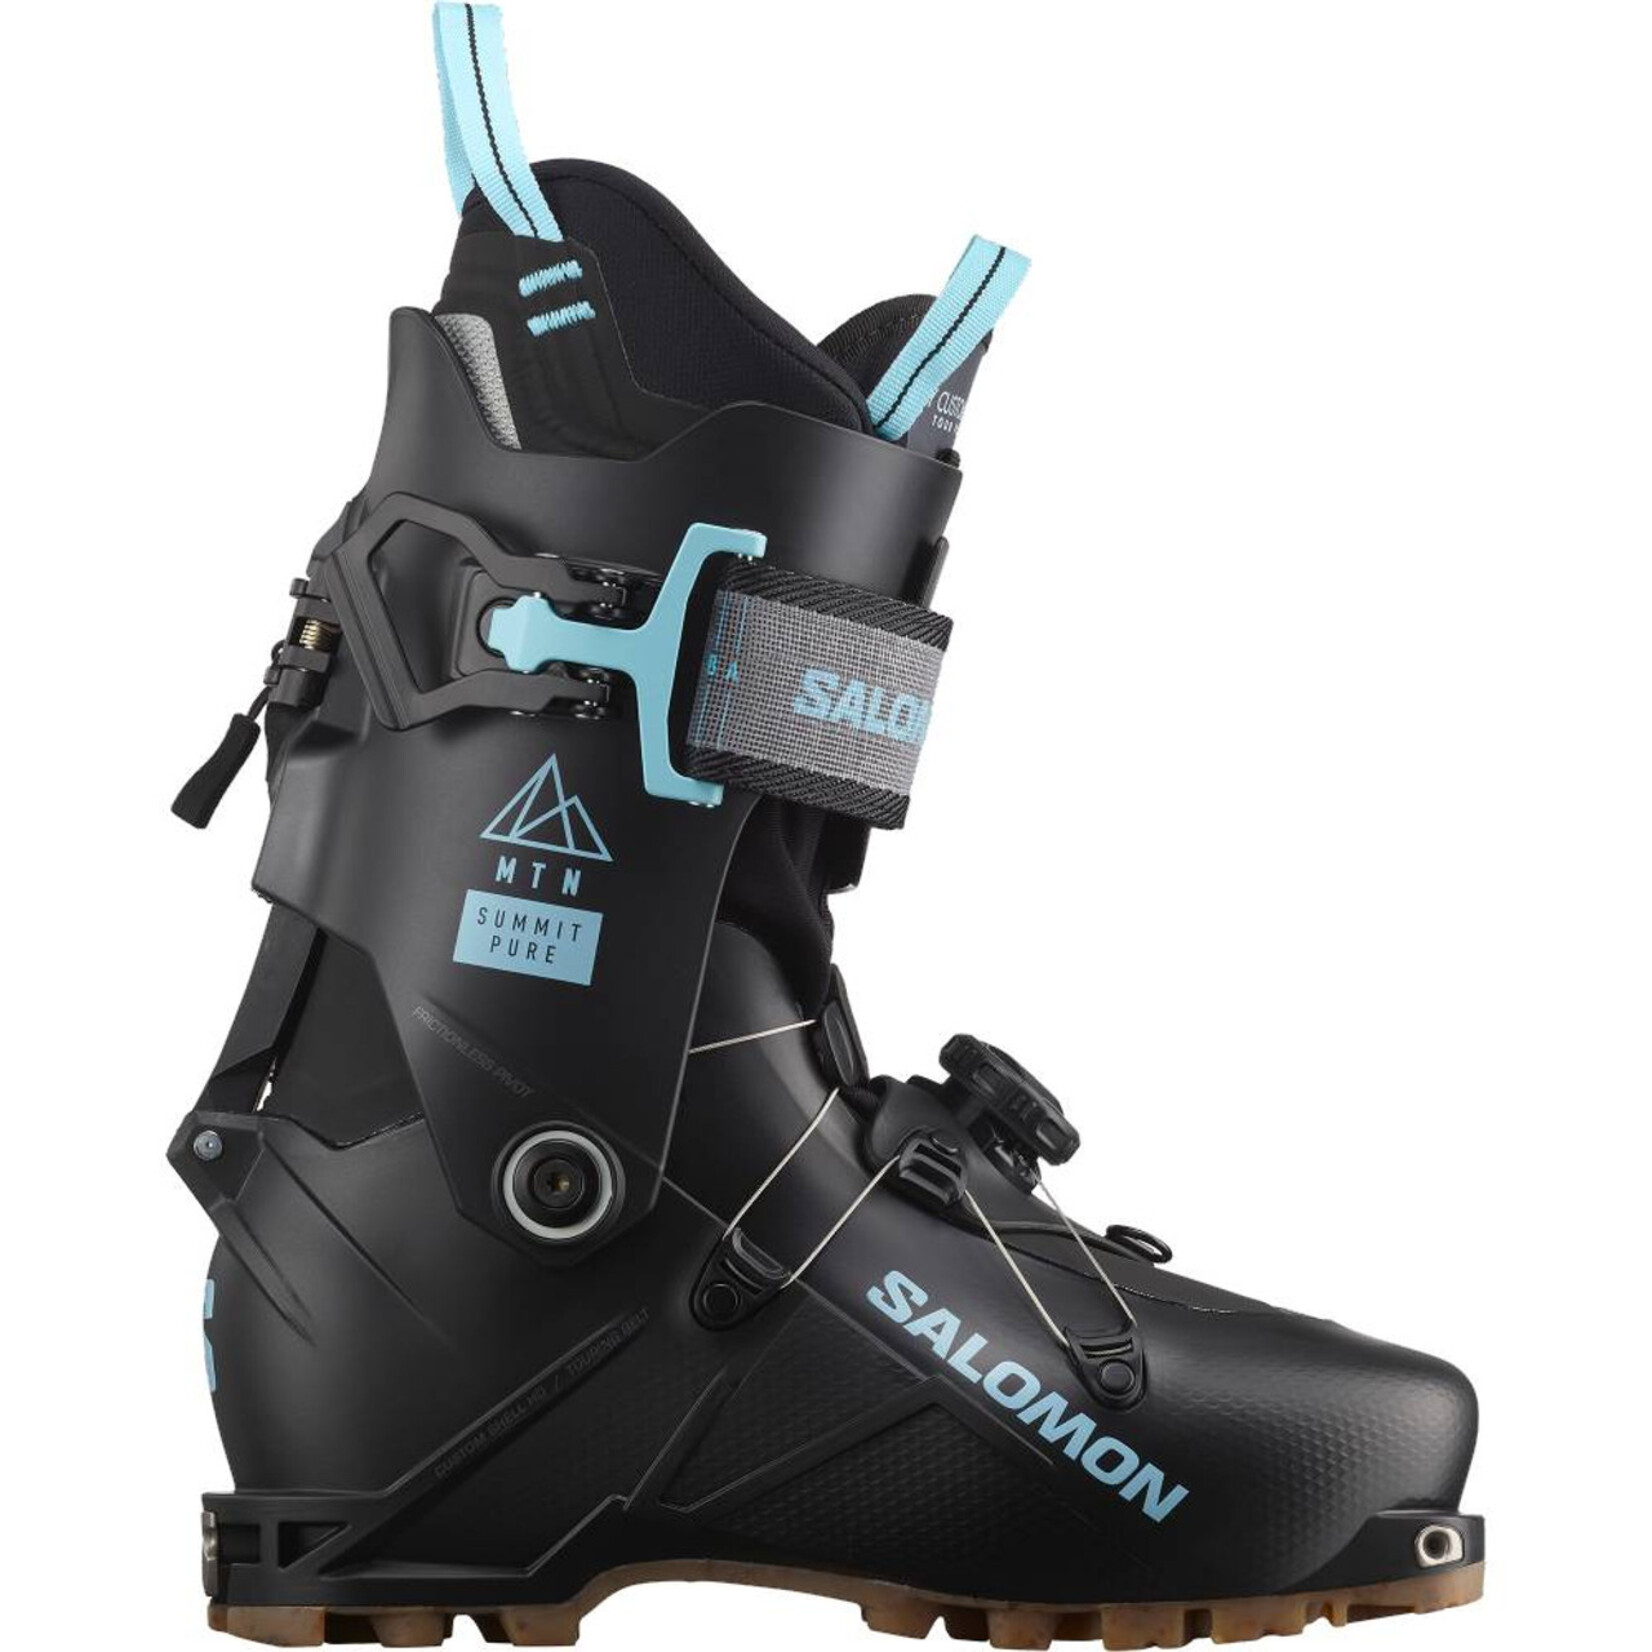 Salomon MTN Summit Pure Women's Ski Boot